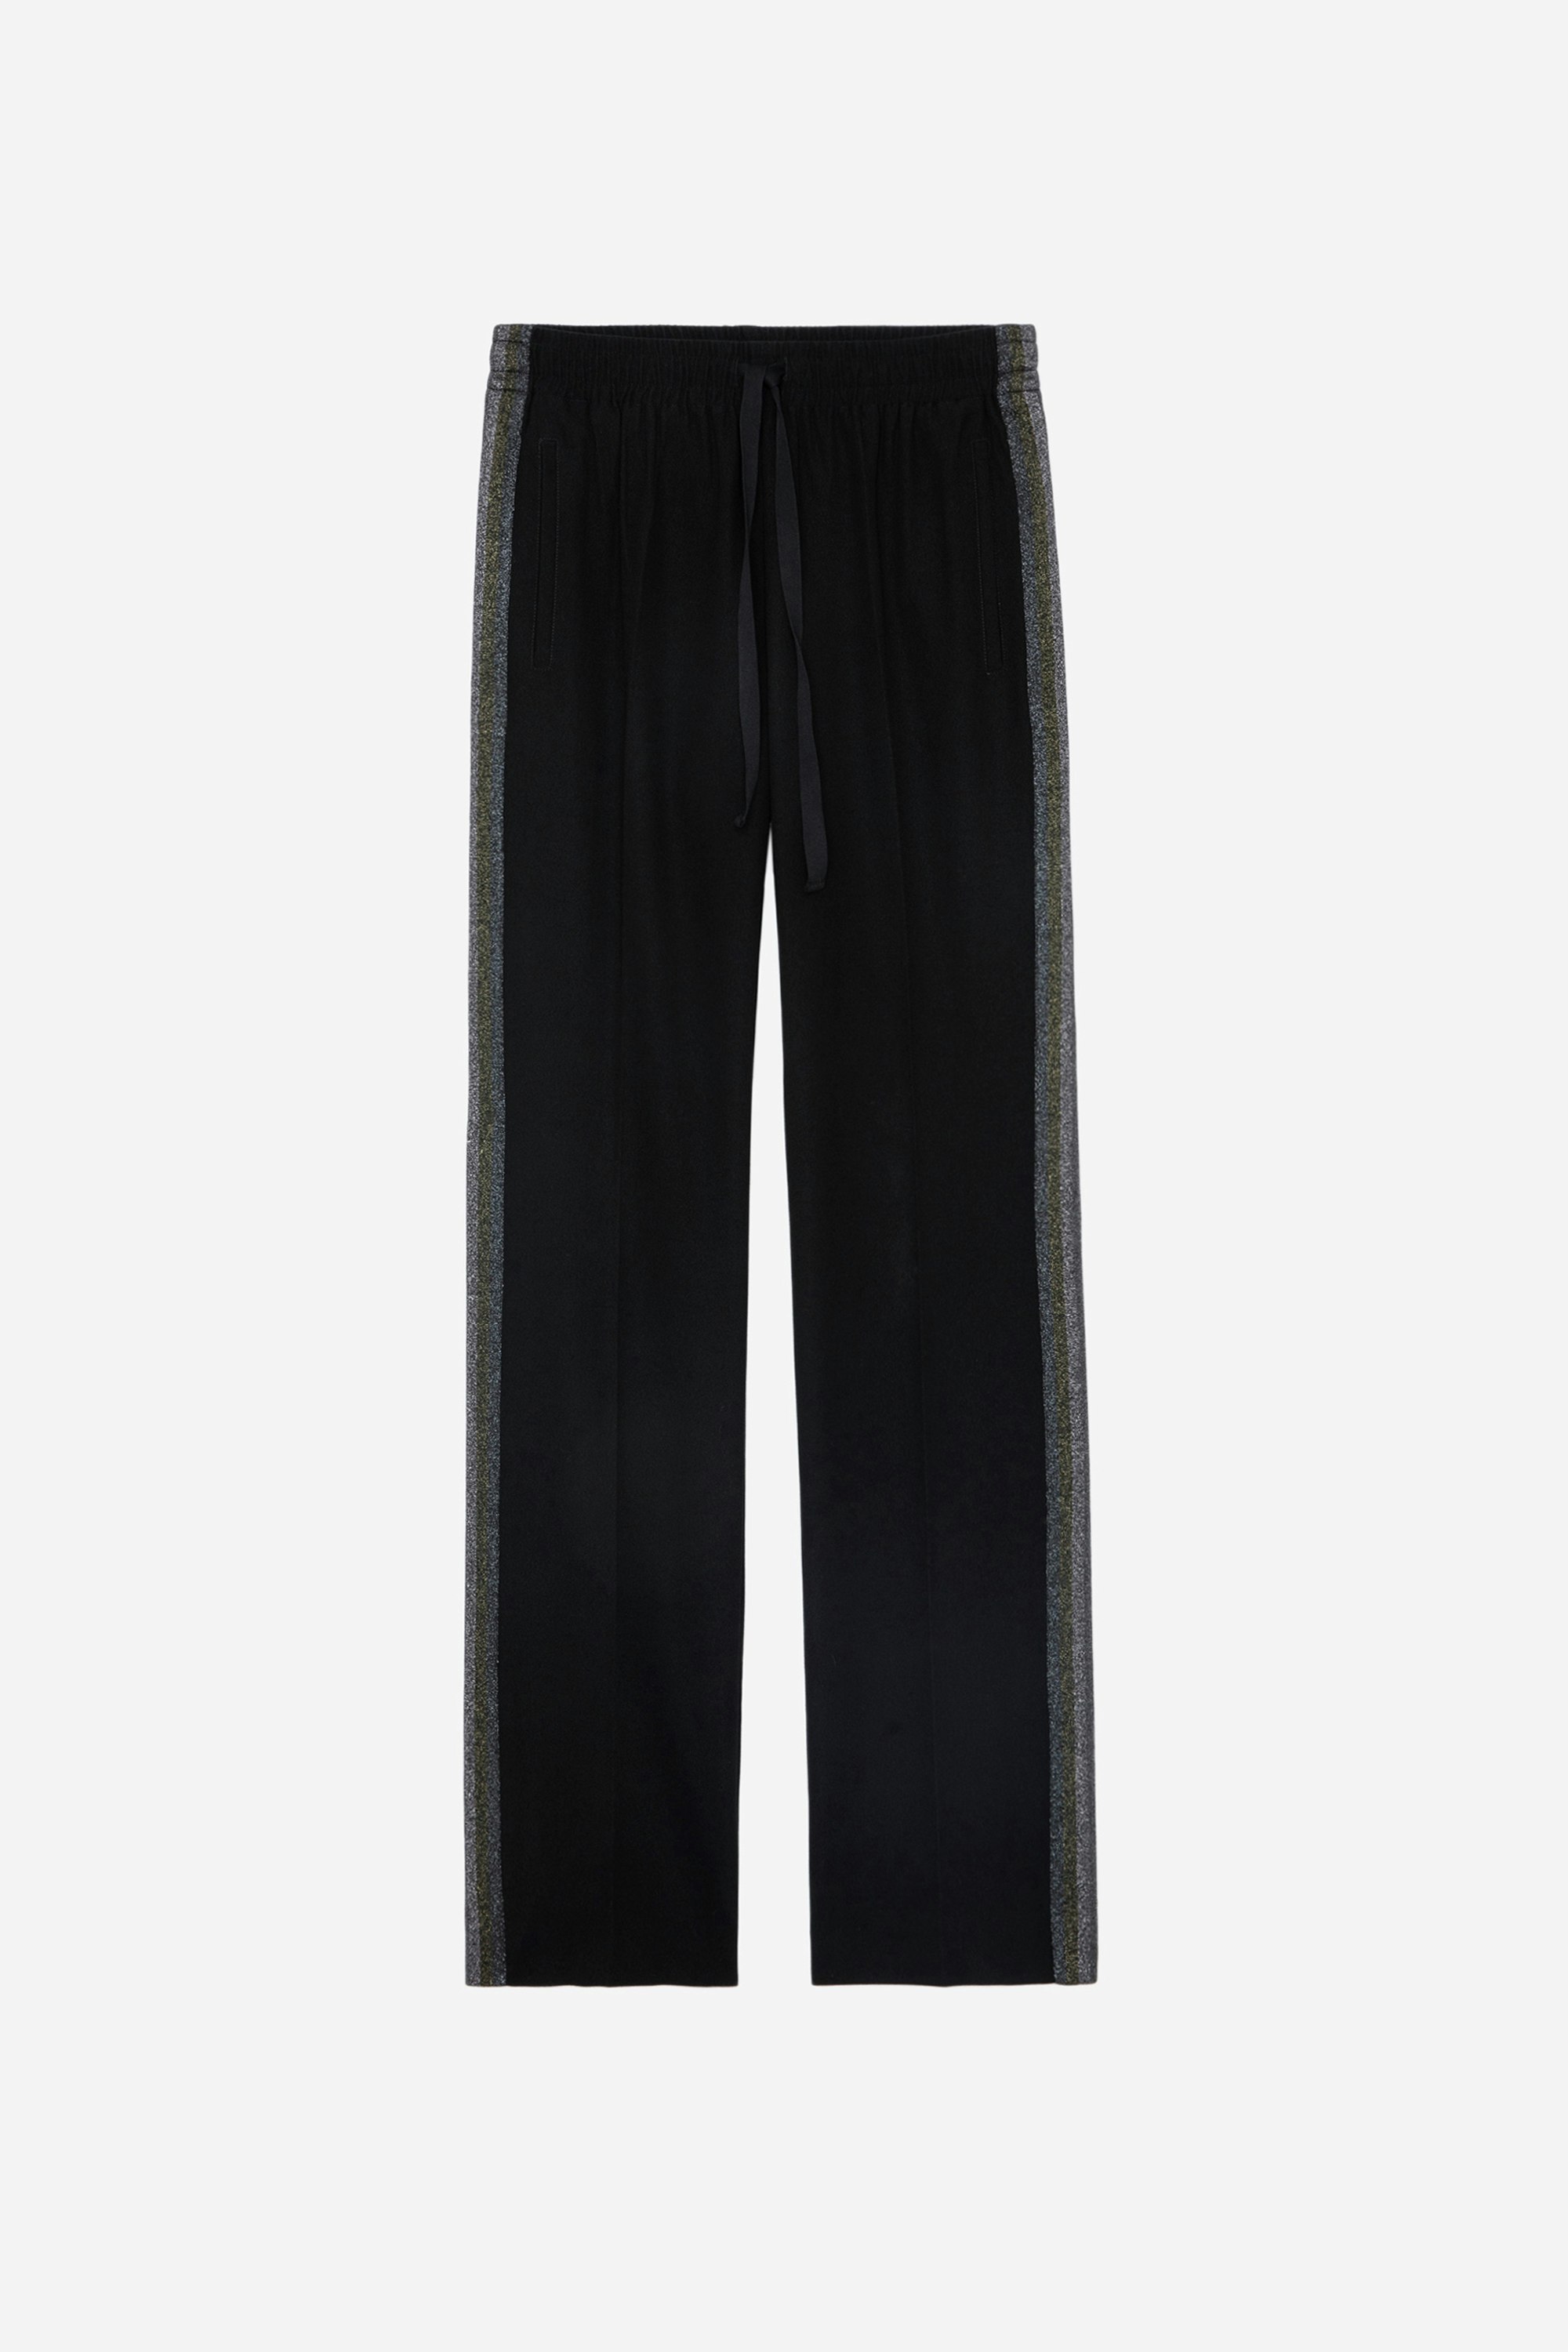 Hose Pomy - Damenhose in Schwarz mit seitlichen Pailletenstreifen